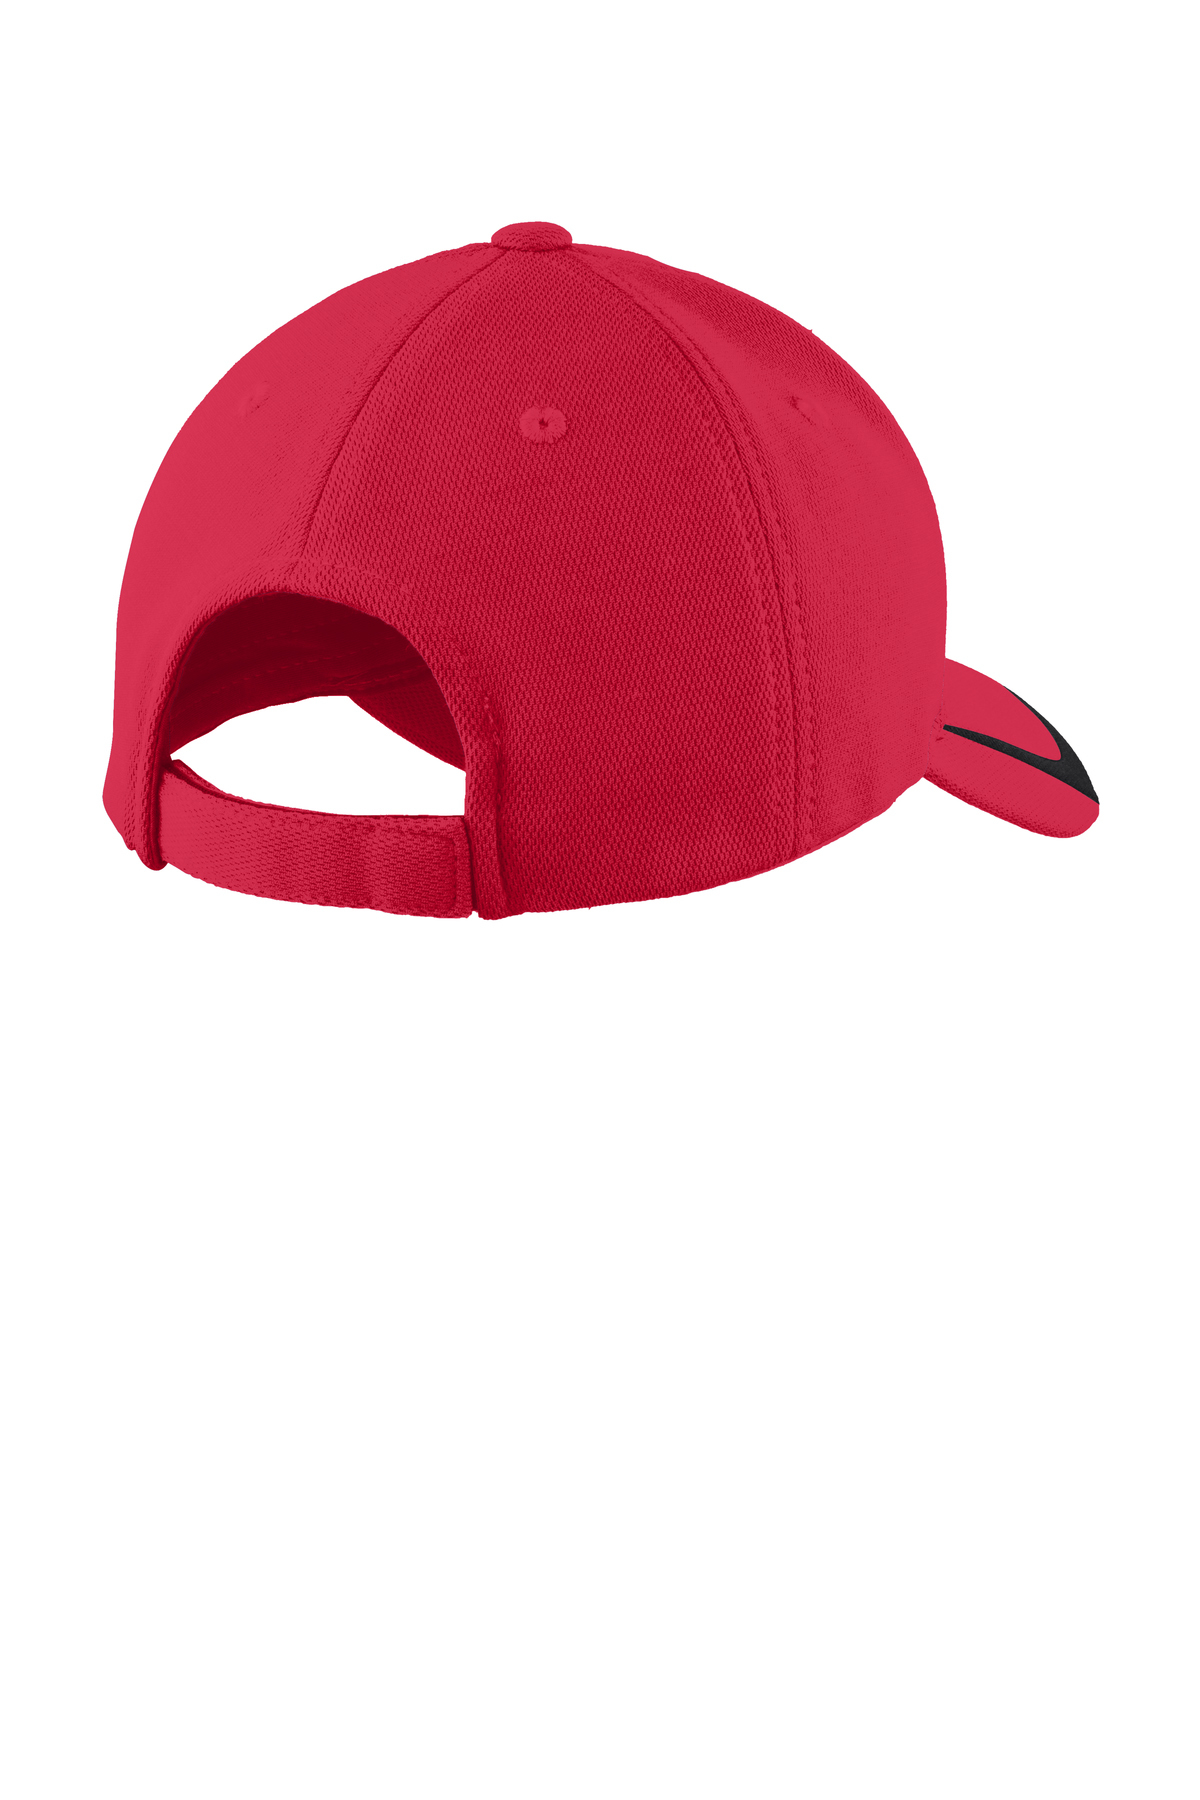 Sport-Tek ® Pique Colorblock Cap | Product | SanMar